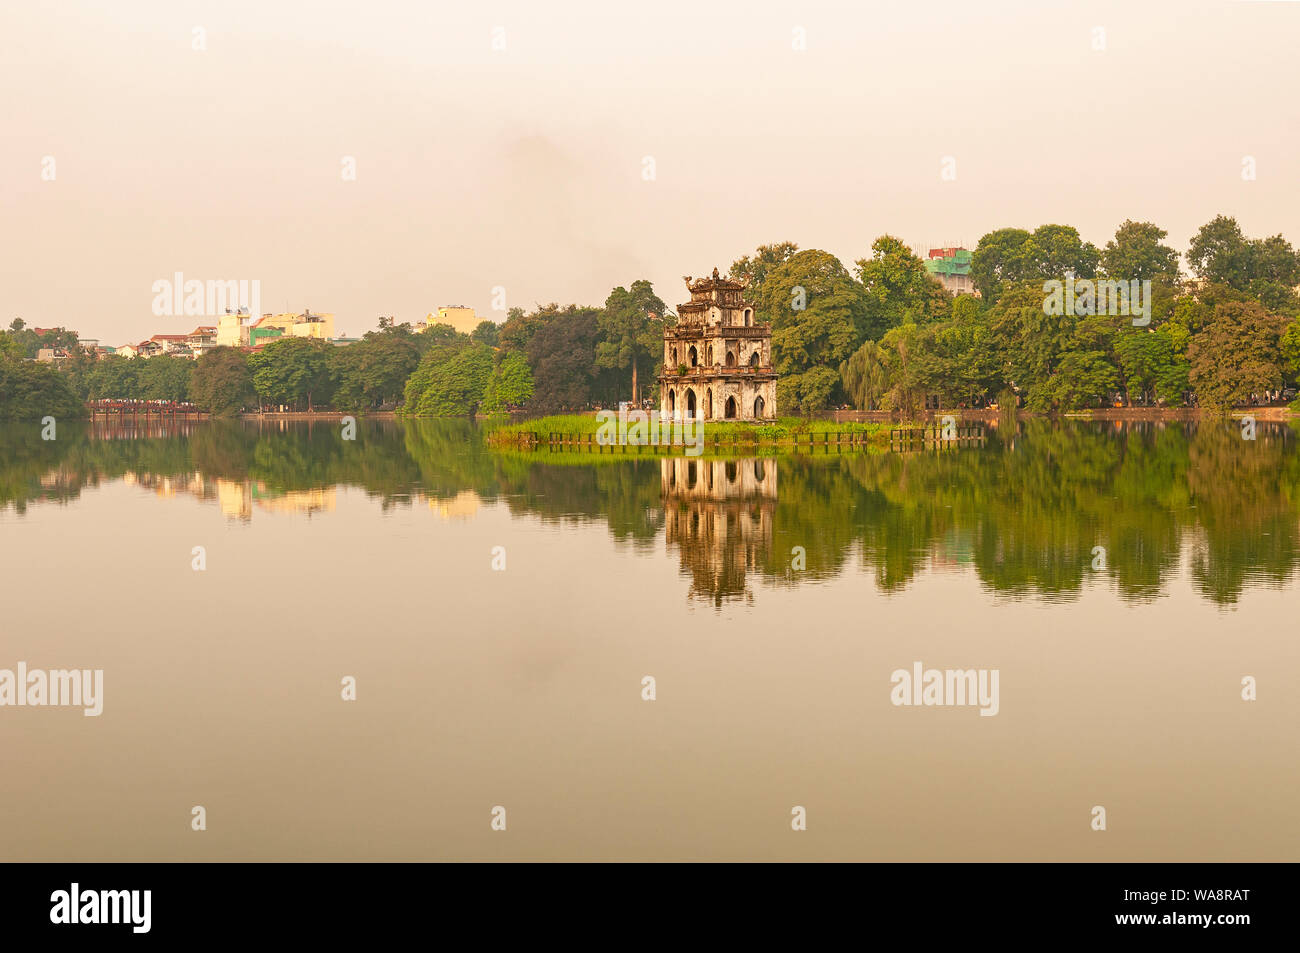 La riflessione della tartaruga Pagoda Tower nel centro del lago Hoan Kiem o al lago della spada restaurato nel centro di Hanoi, Vietnam del Nord. Foto Stock